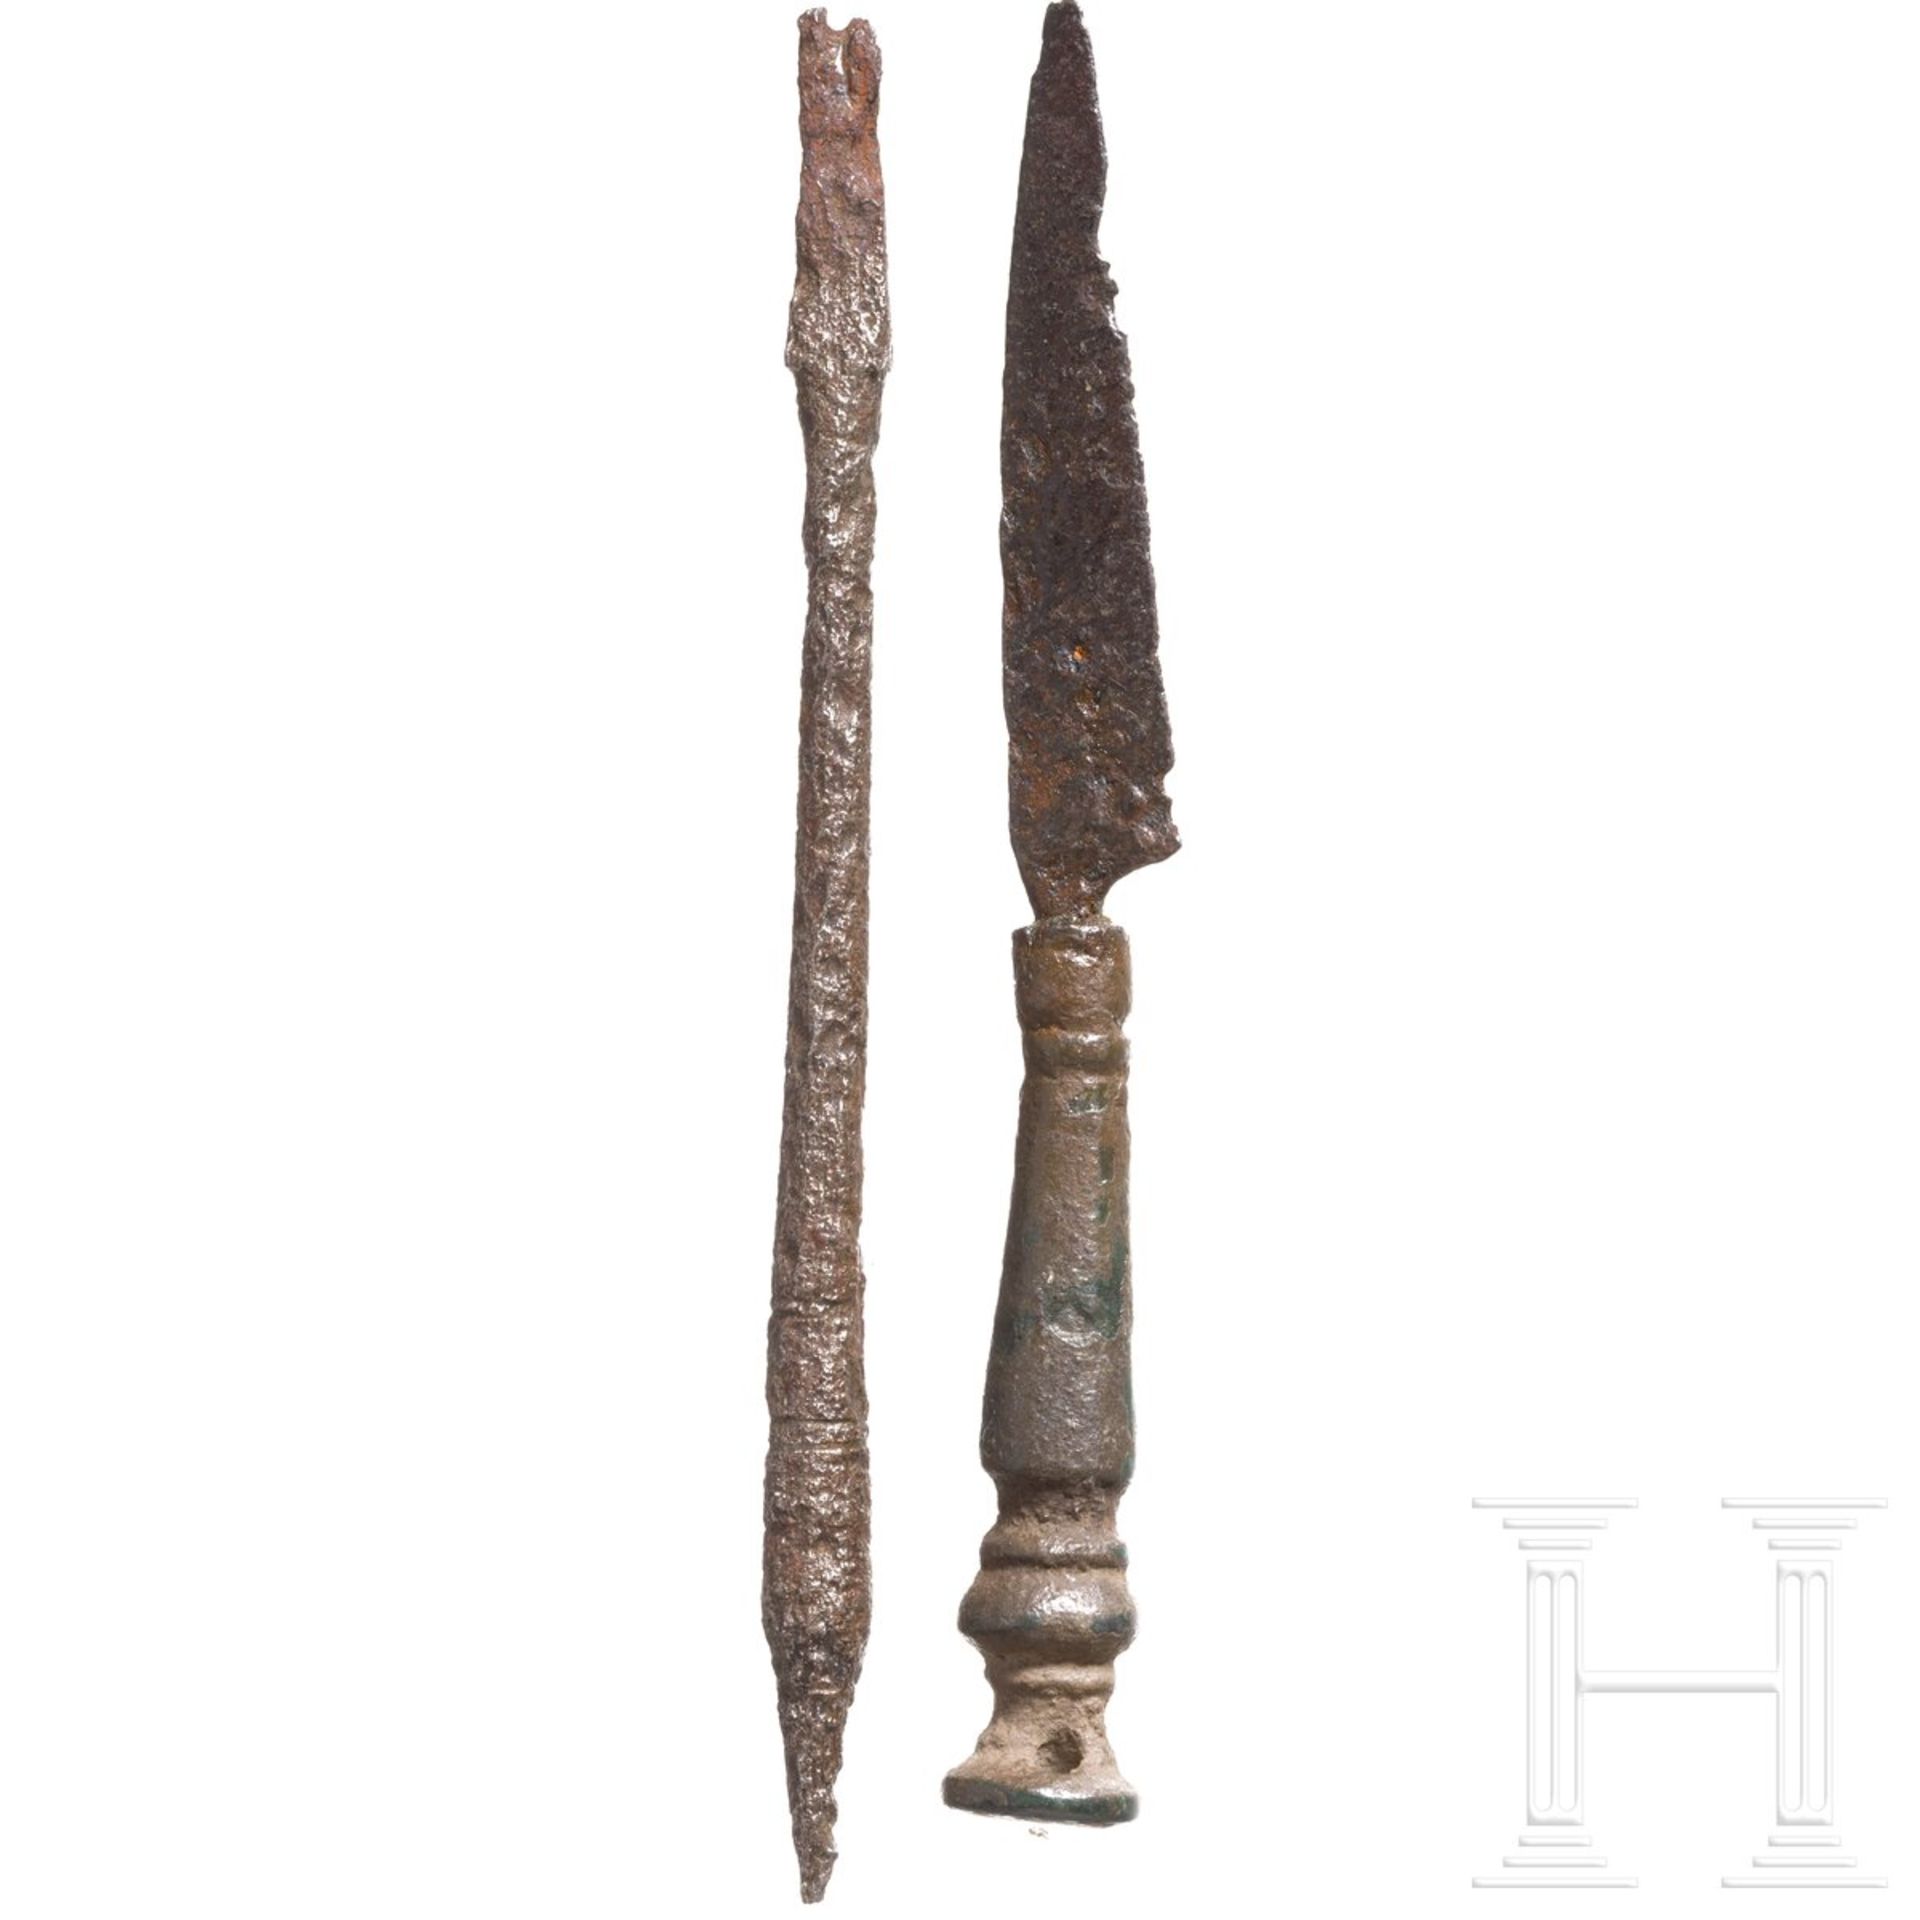 Griffel (Stilus) und Messer, römisch, 1. - 3. Jhdt. n. Chr. - Image 2 of 2